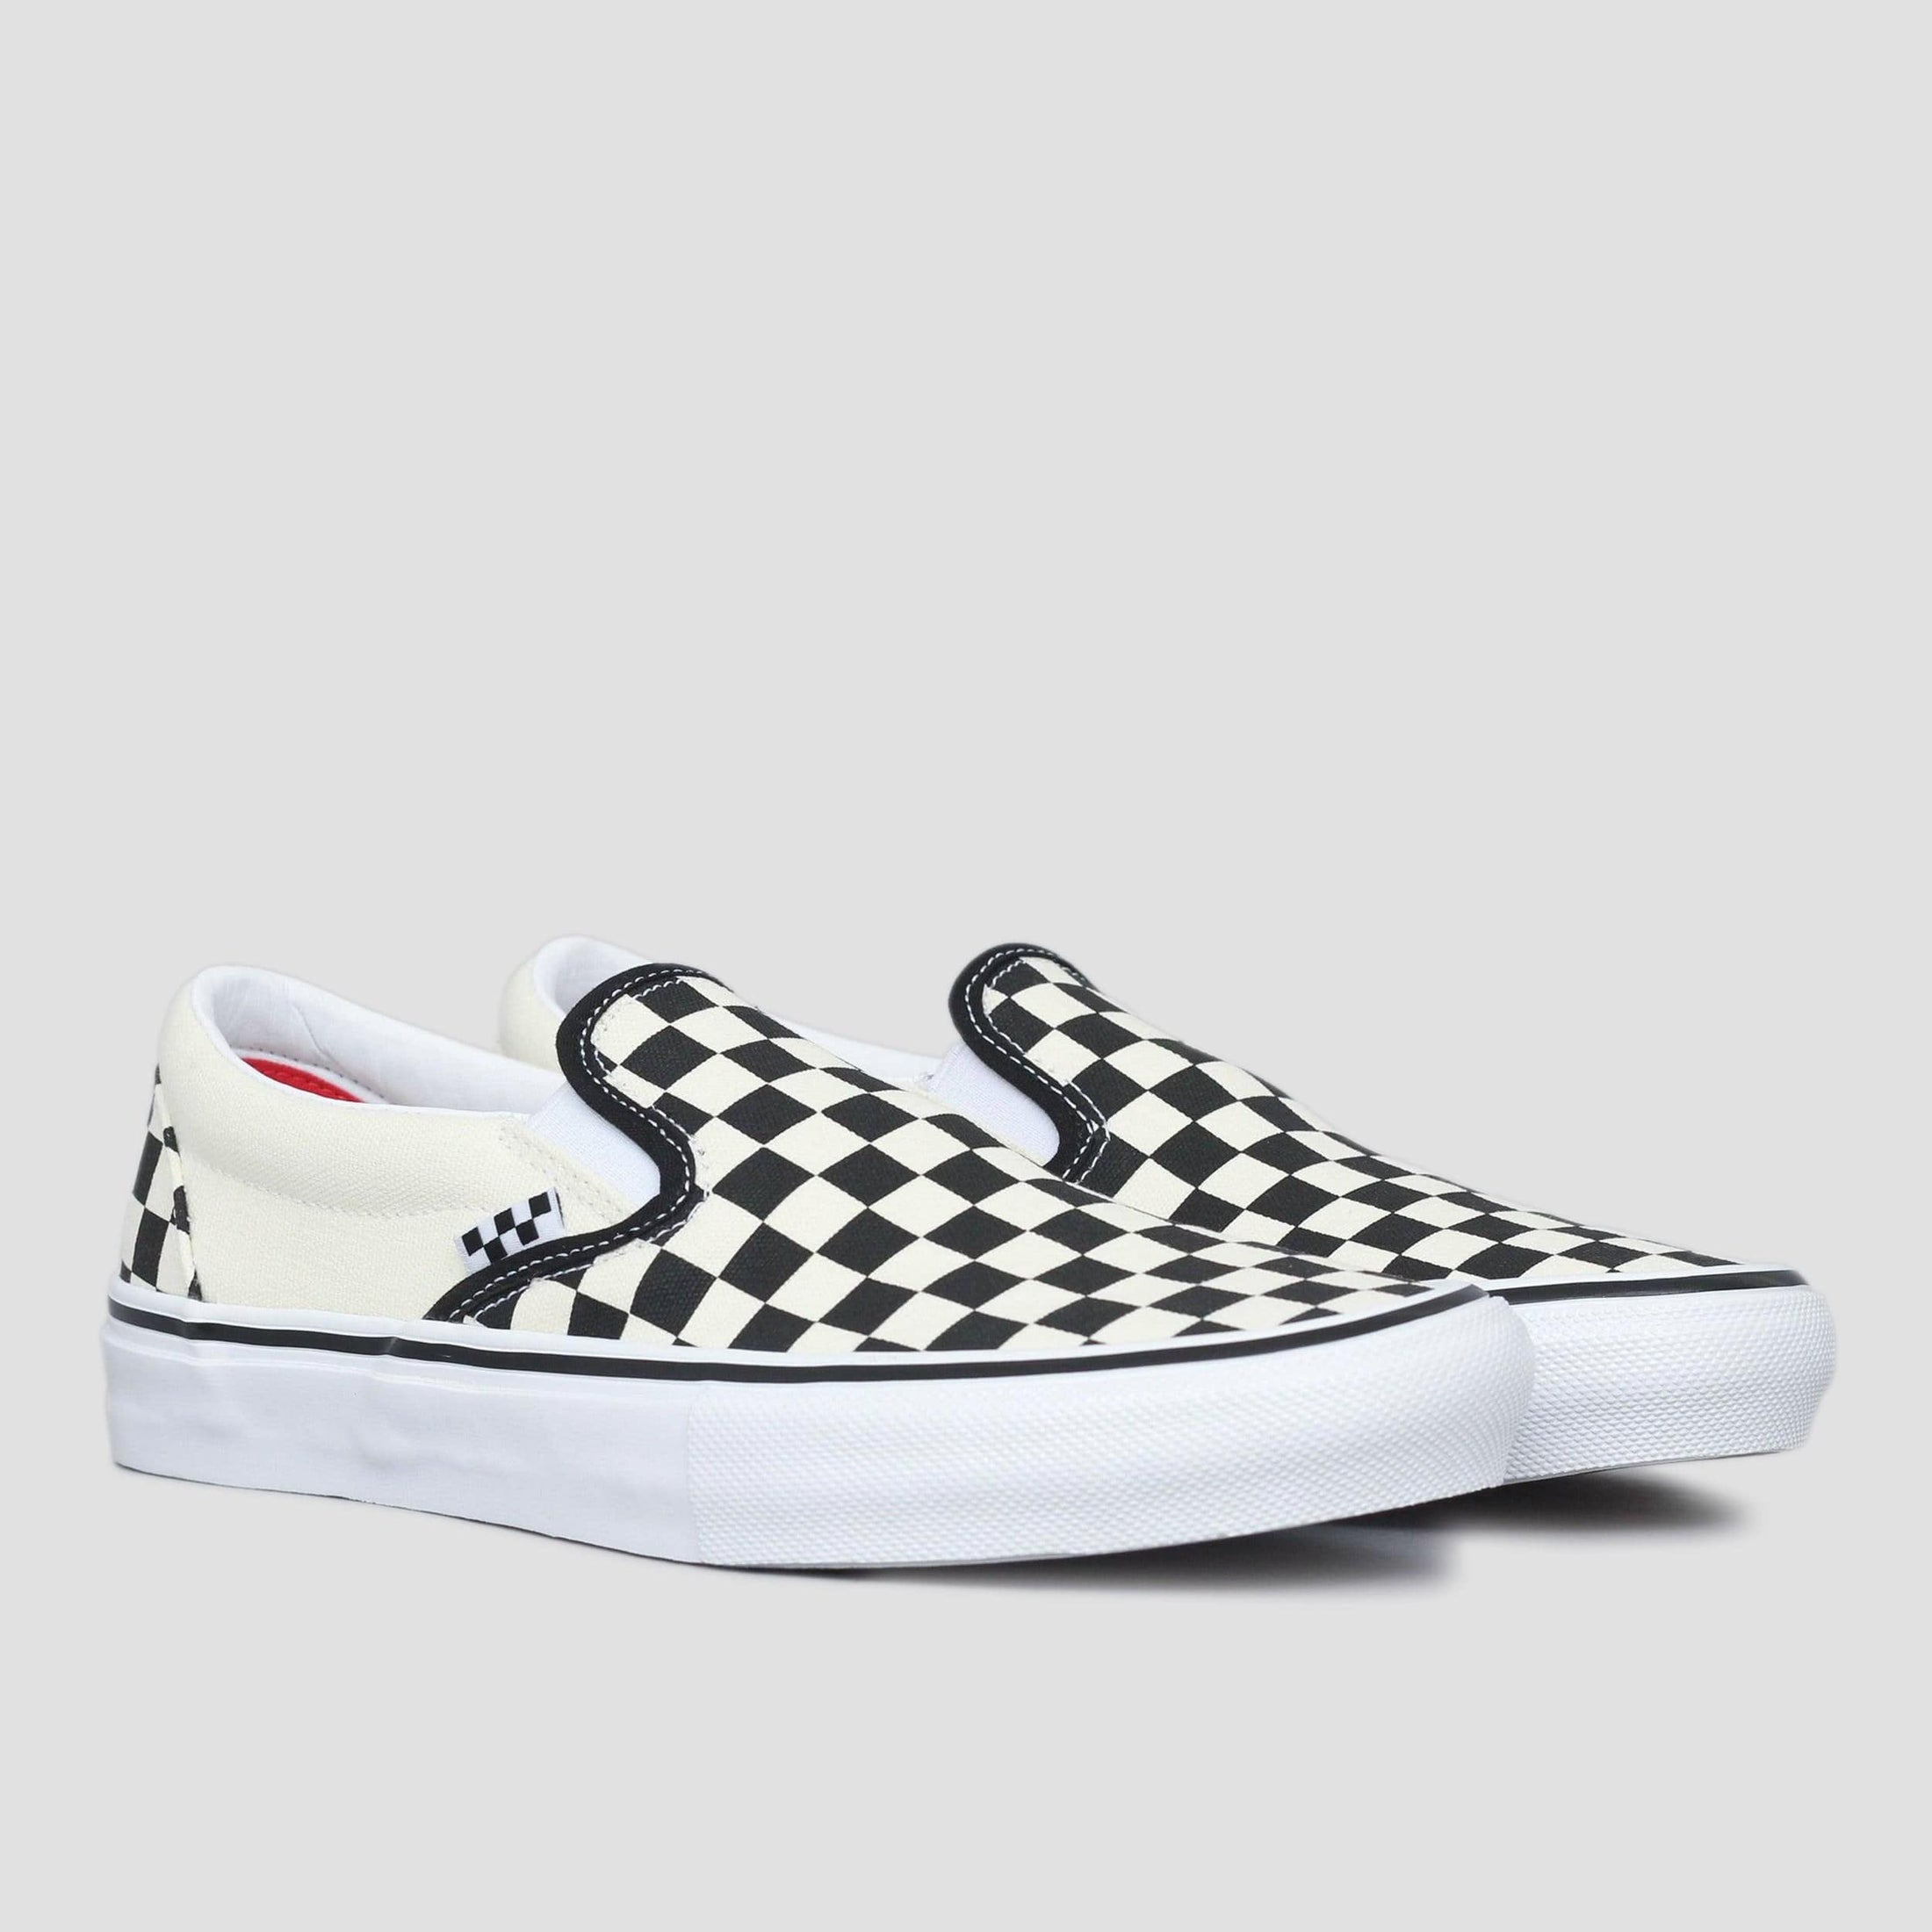 Vans Skate Slip-On Shoes (Checkerboard) Black / Off White